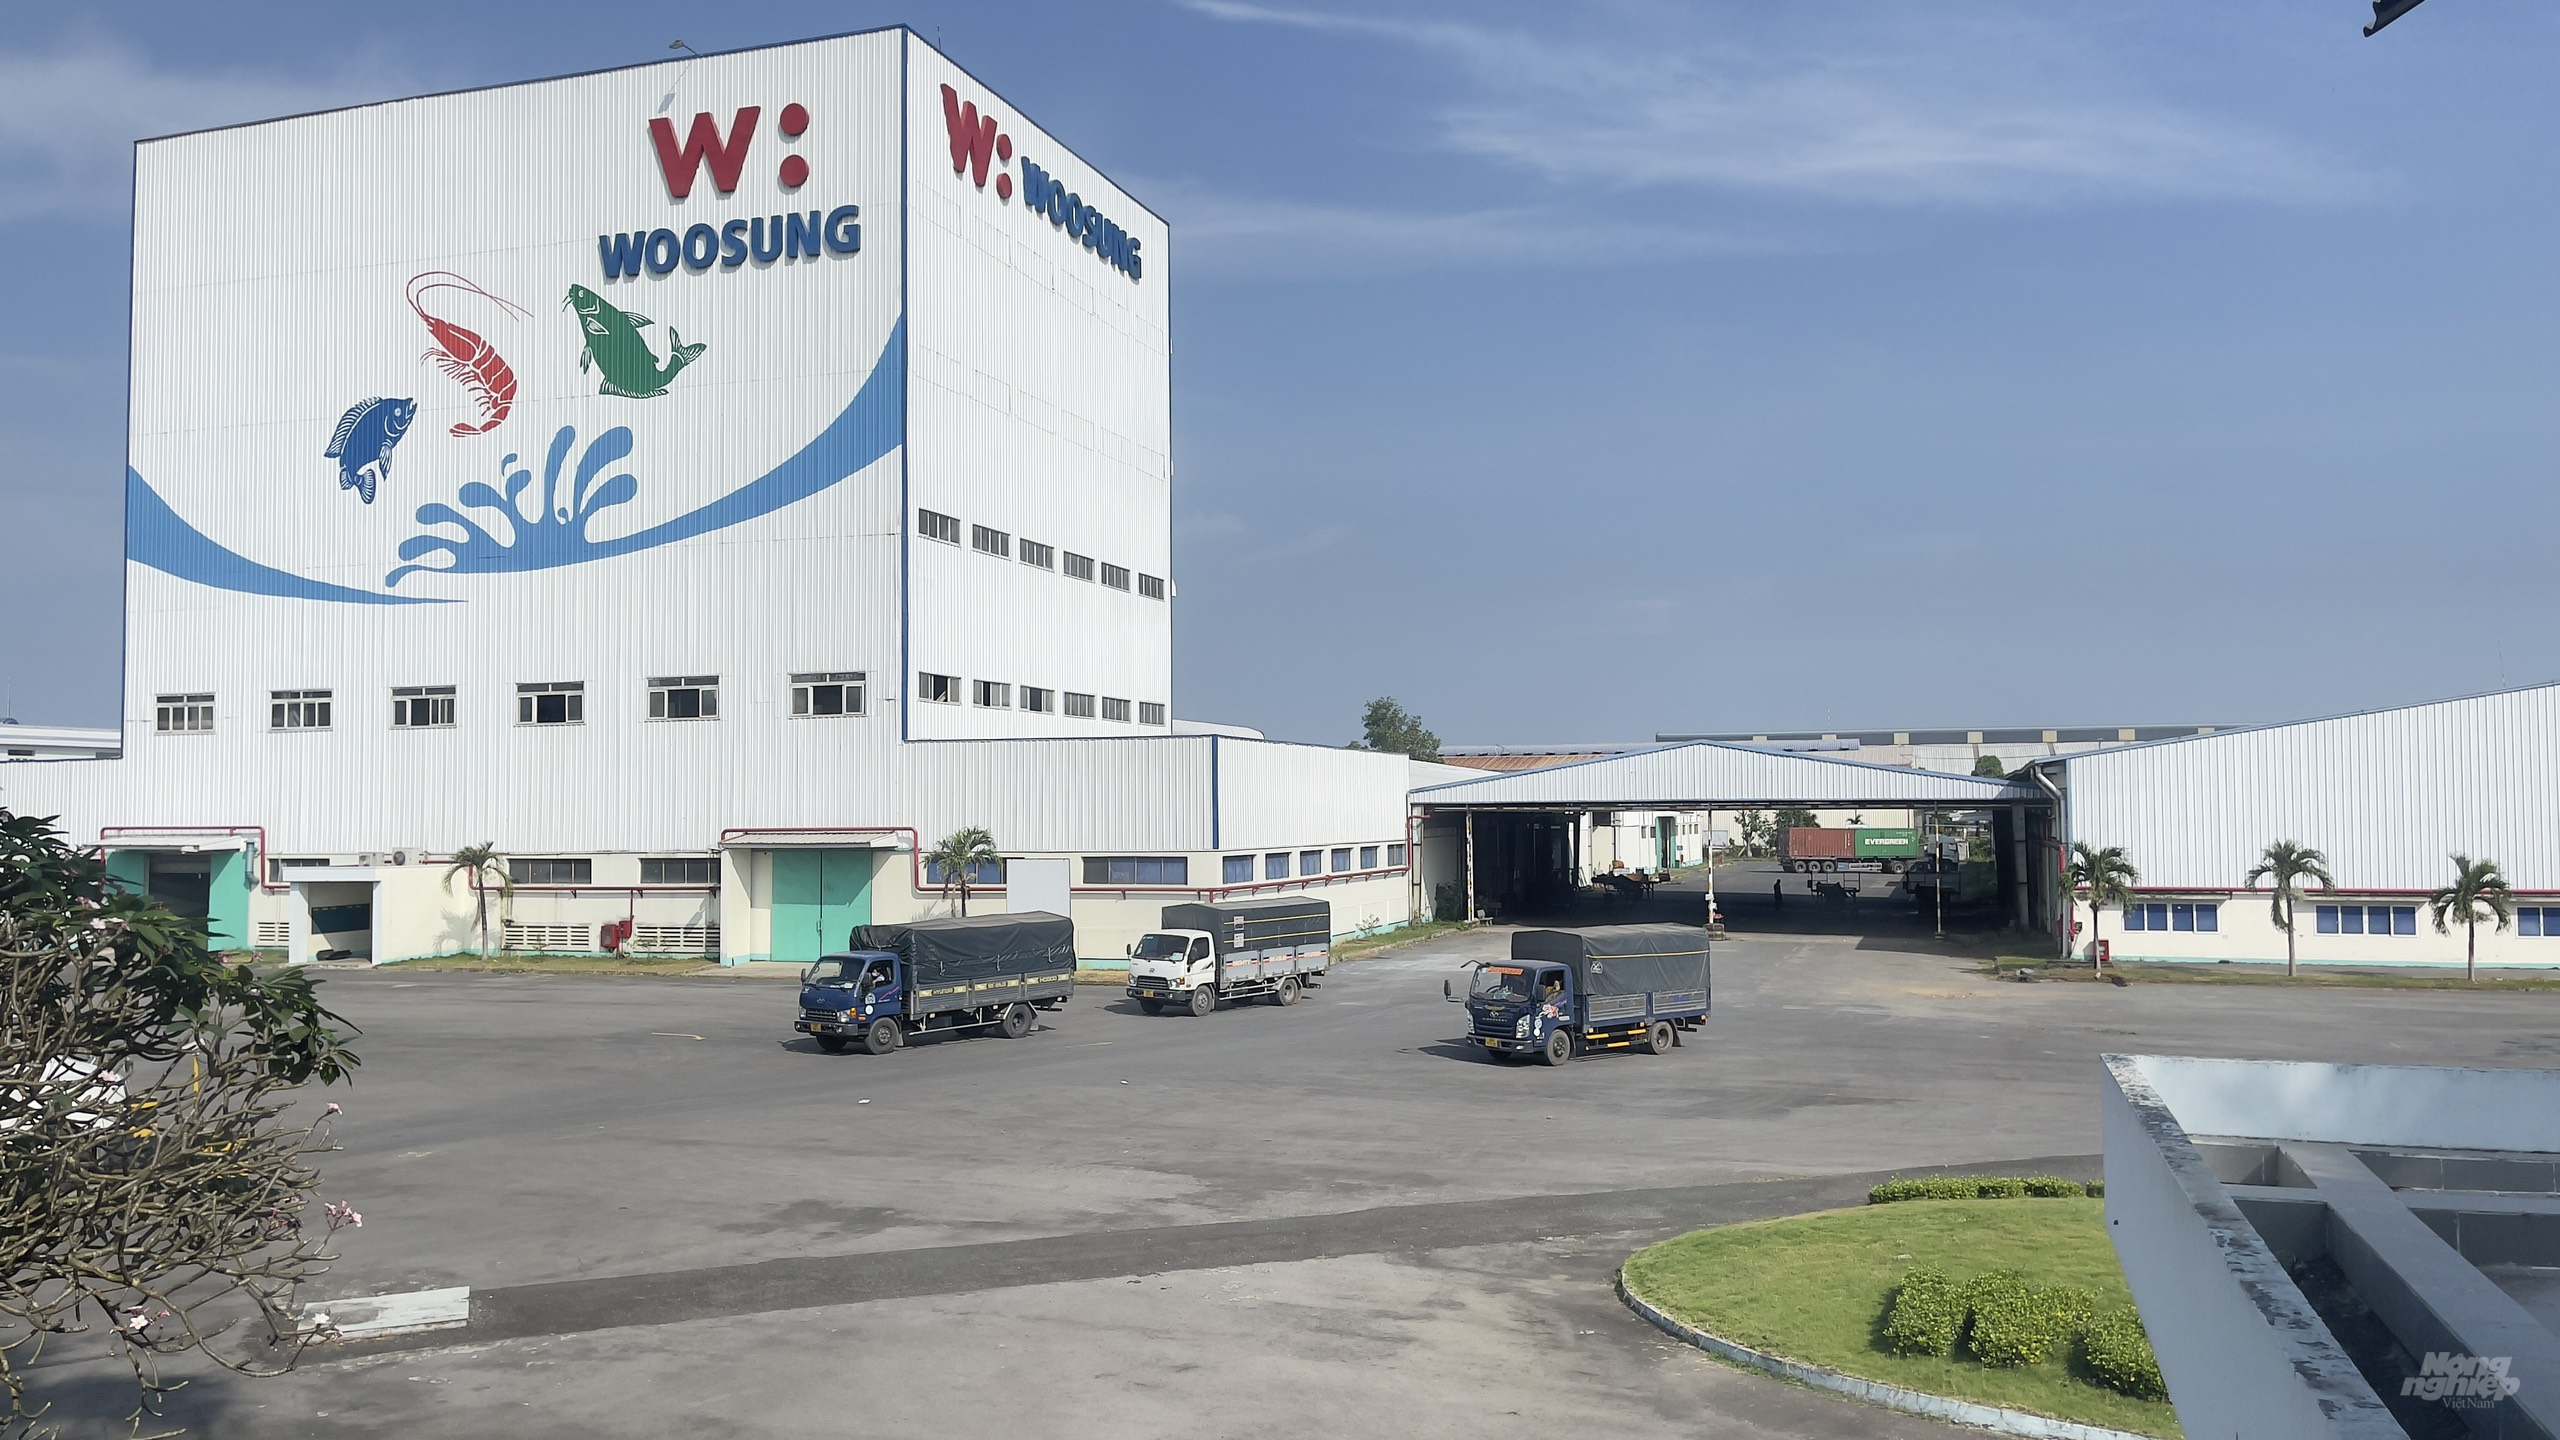 Tập đoàn Woosung luôn khẳng định chỗ đứng trong thị trường thức ăn chăn nuôi toàn cầu. Ảnh: Woosung Việt Nam.